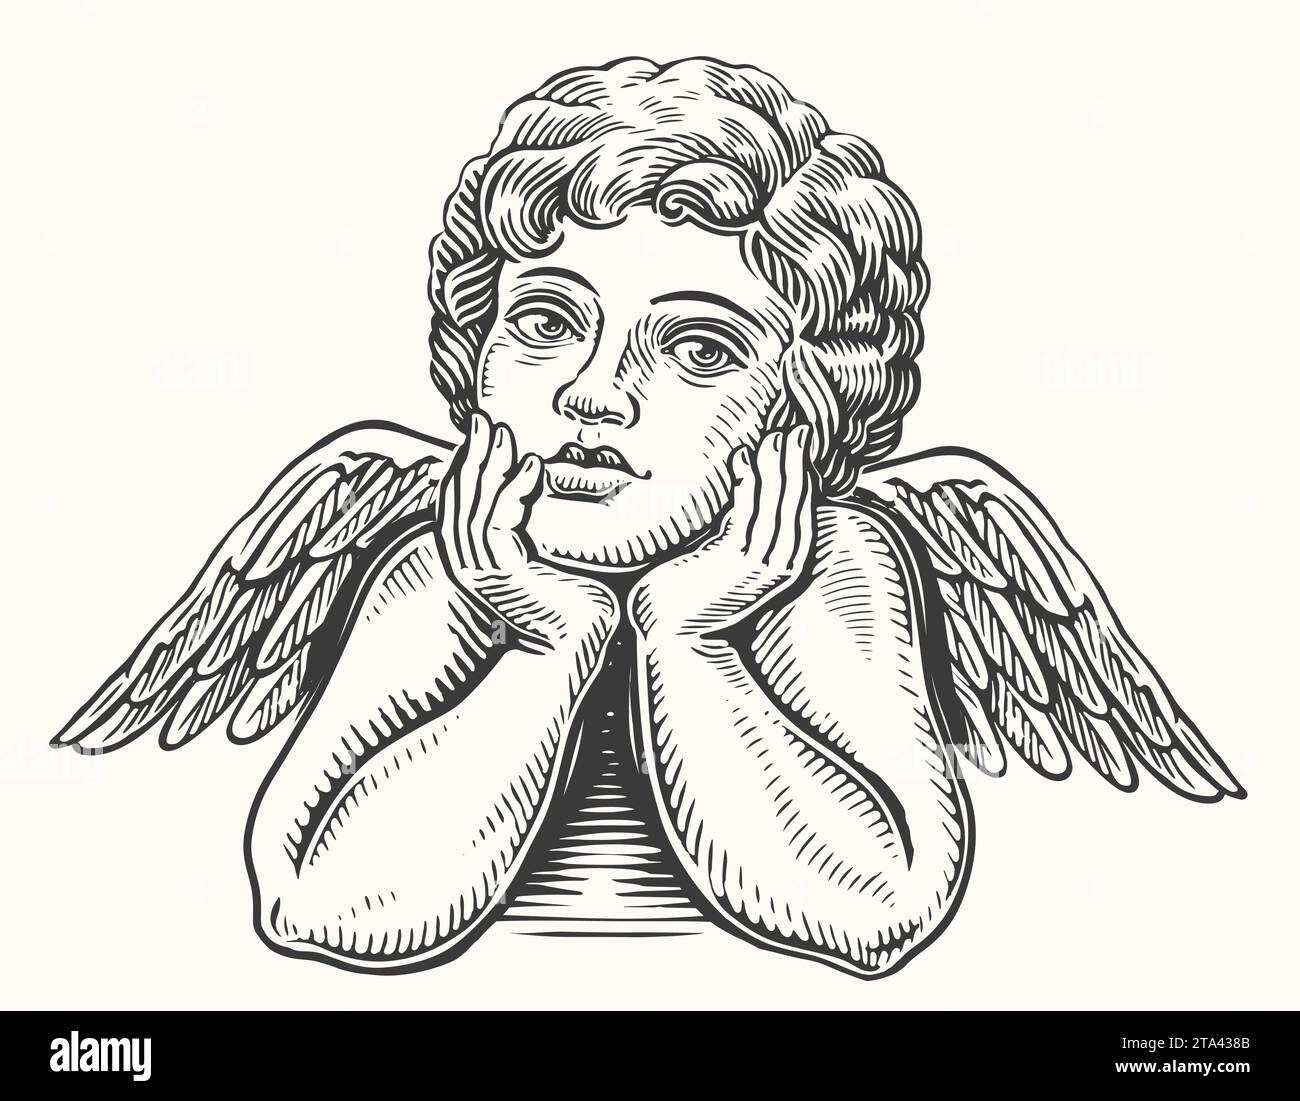 Handgezeichnetes nachdenkliches Engelskind mit Flügeln. Cherub- oder Cupid-Skizze. Vintage-Vektor-Illustration Stock Vektor